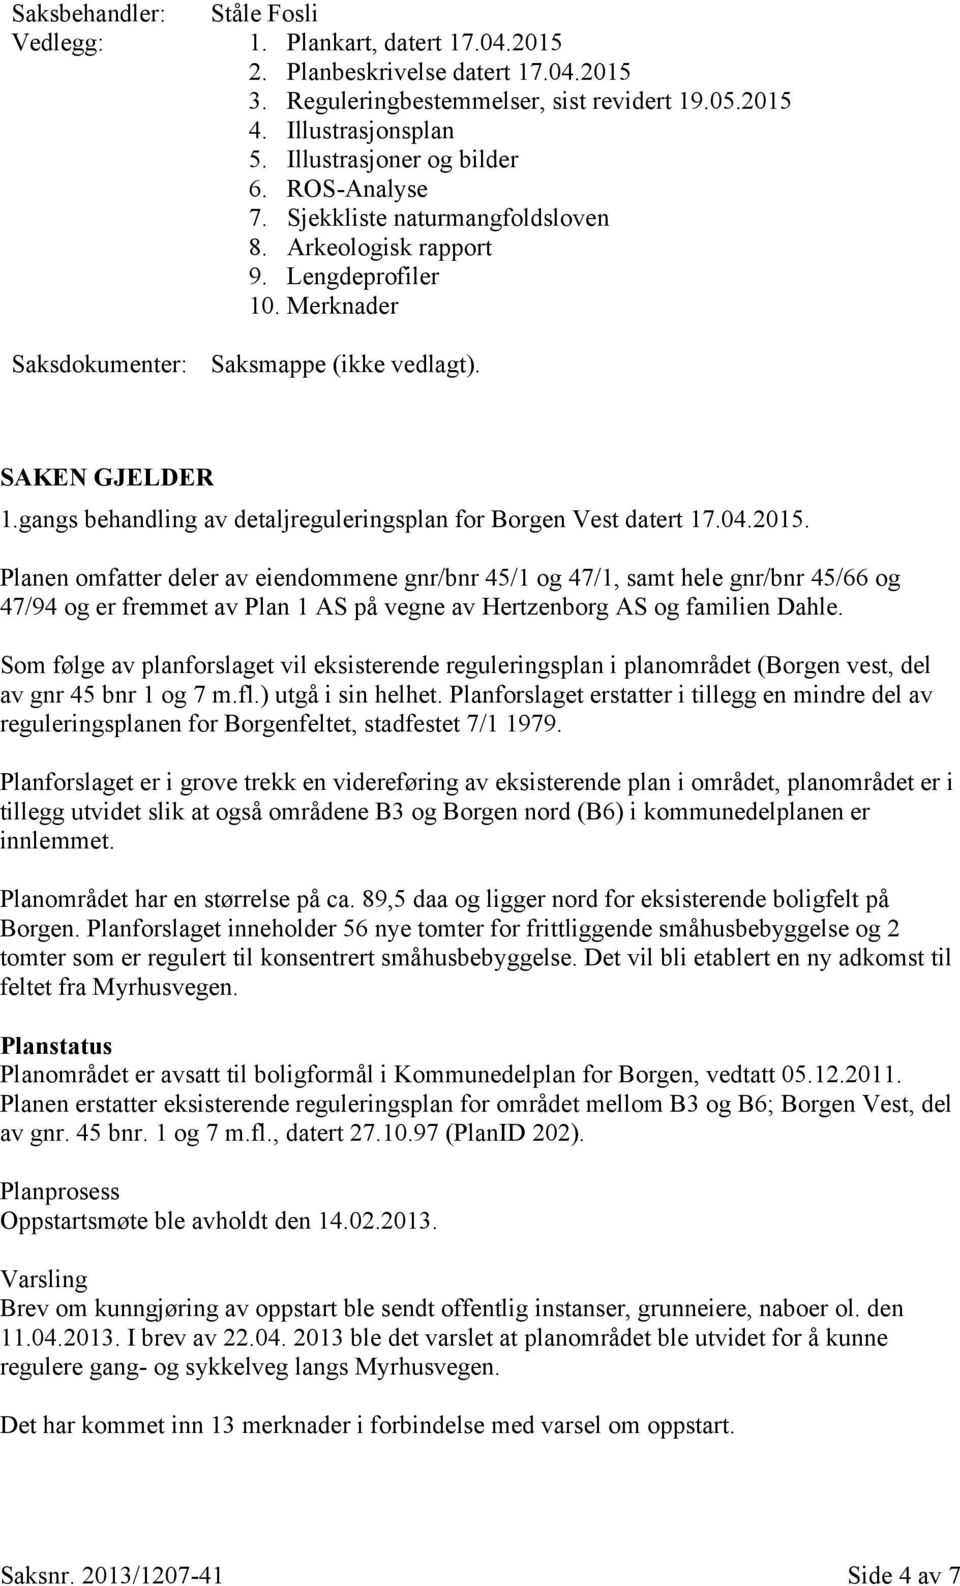 gangs behandling av detaljreguleringsplan for Borgen Vest datert 17.04.2015.